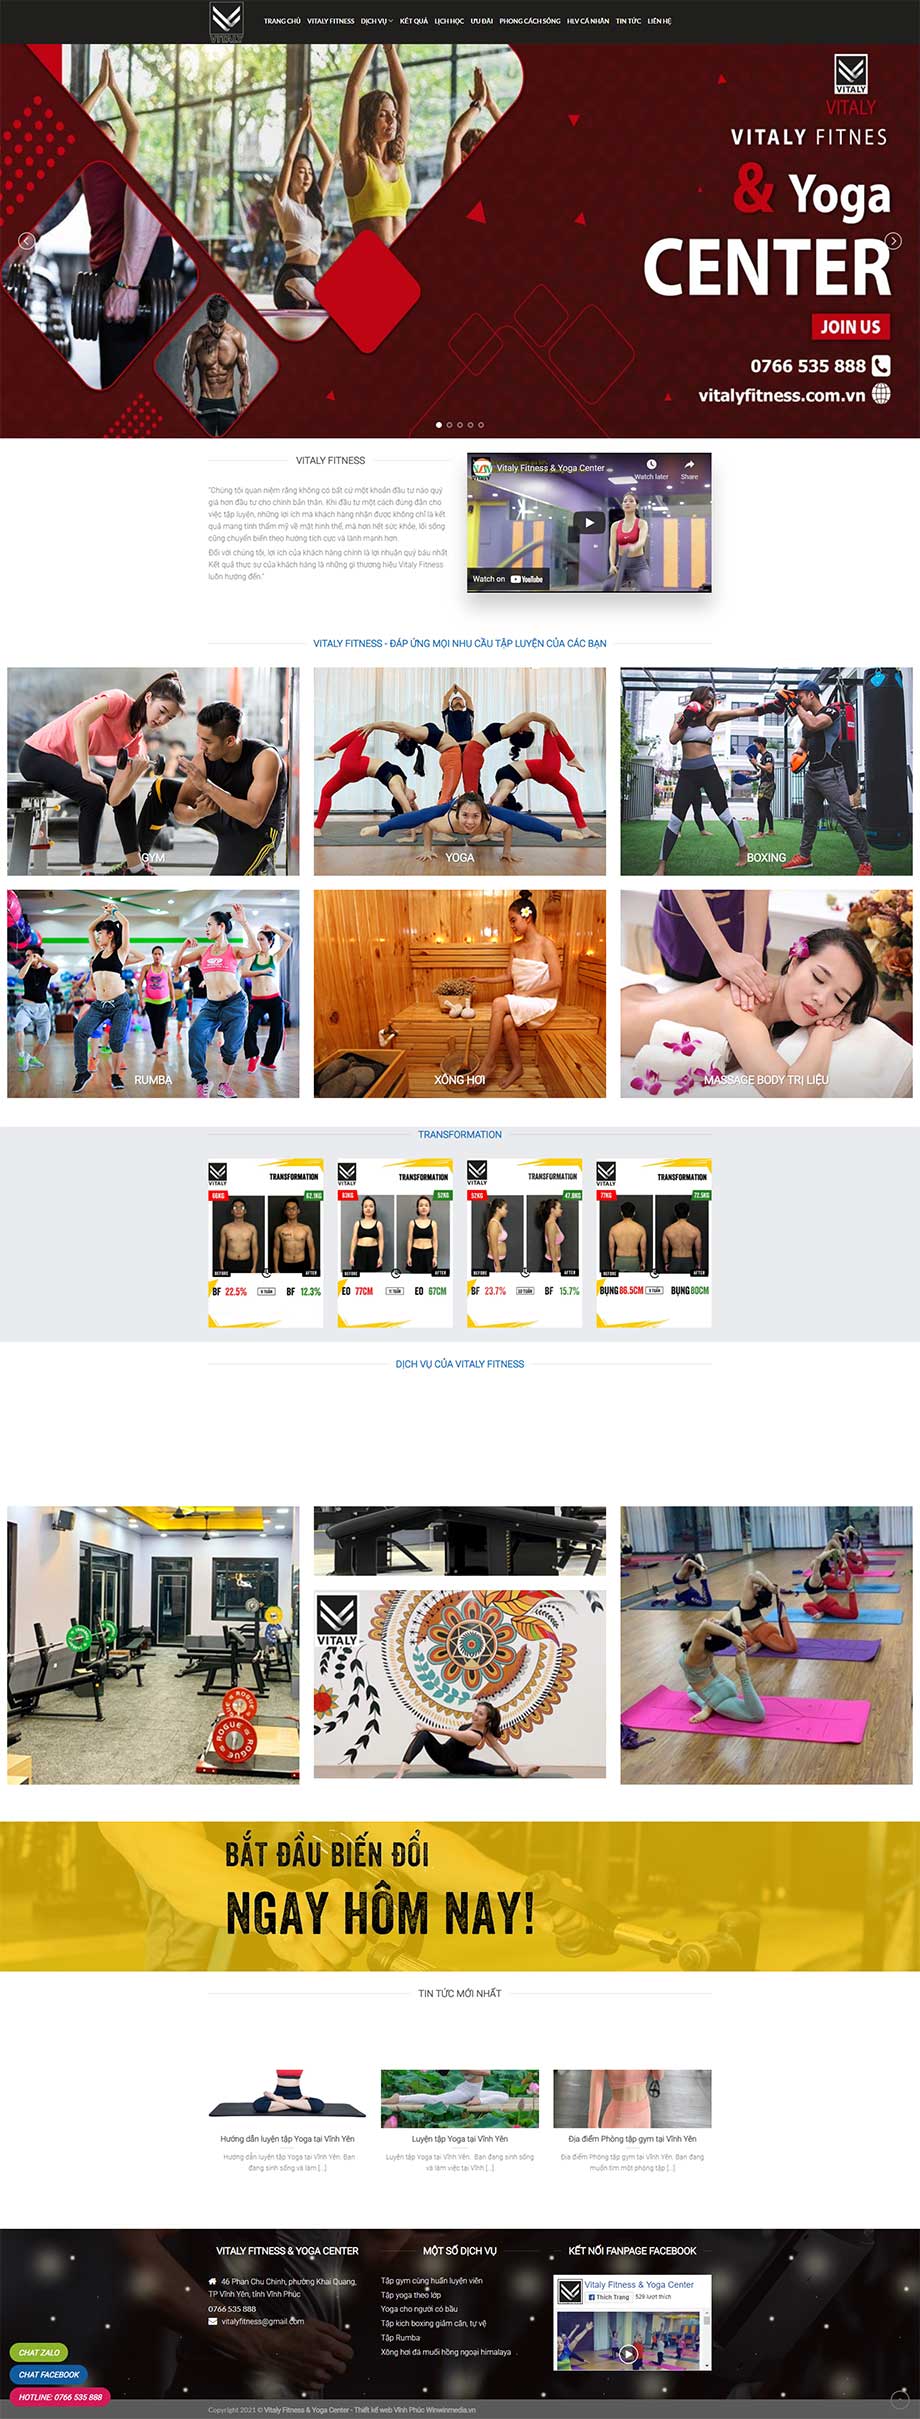 Thiết kế mẫu web Trung tâm Gym Vitaly Fitness & Yoga Center